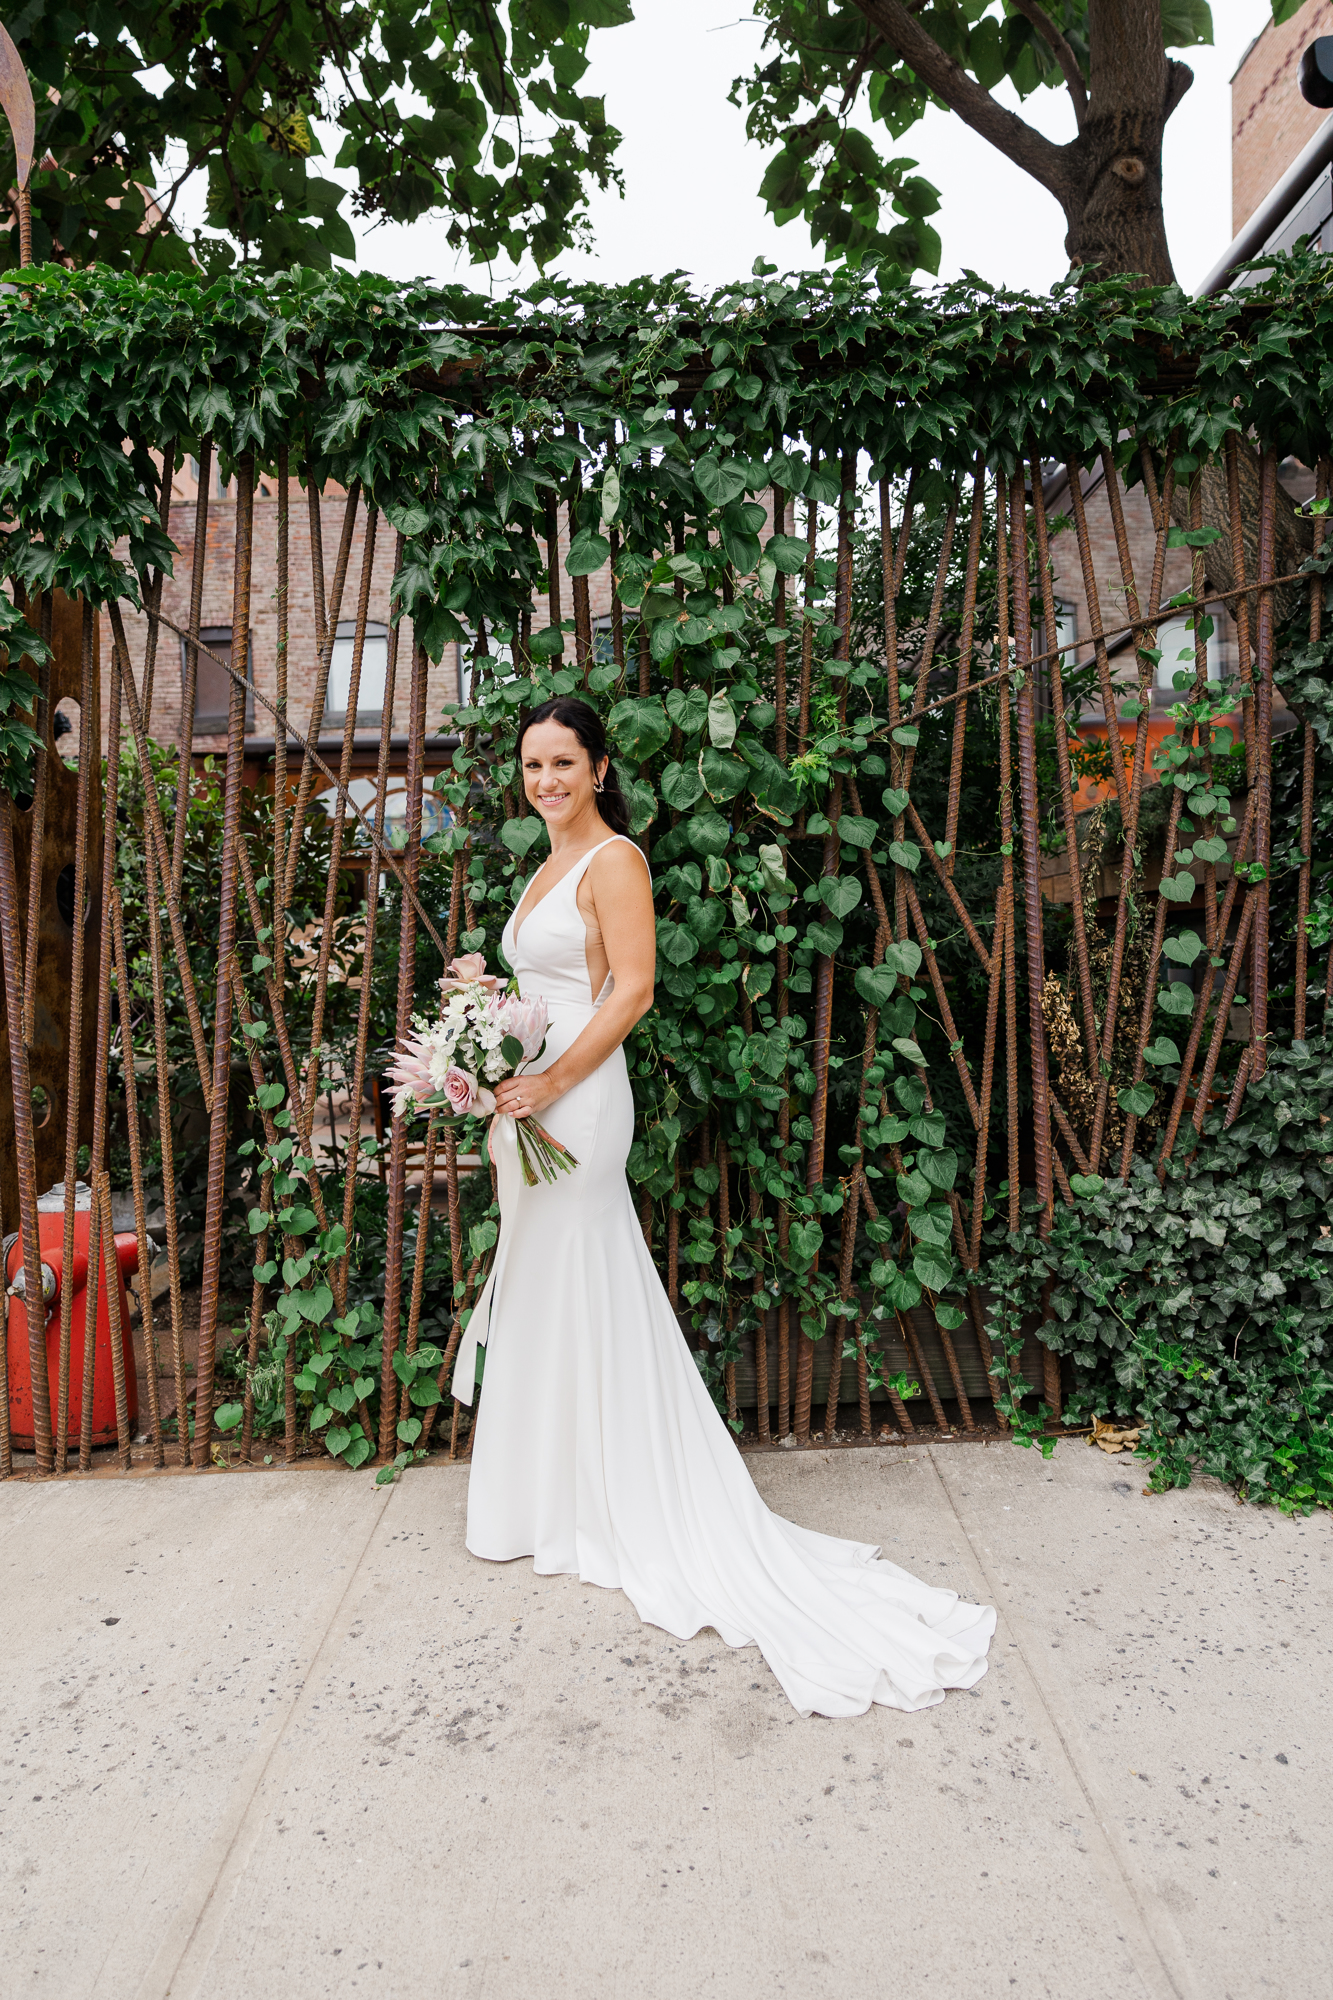 Glowing MyMoon Wedding Photography in Summery Brooklyn